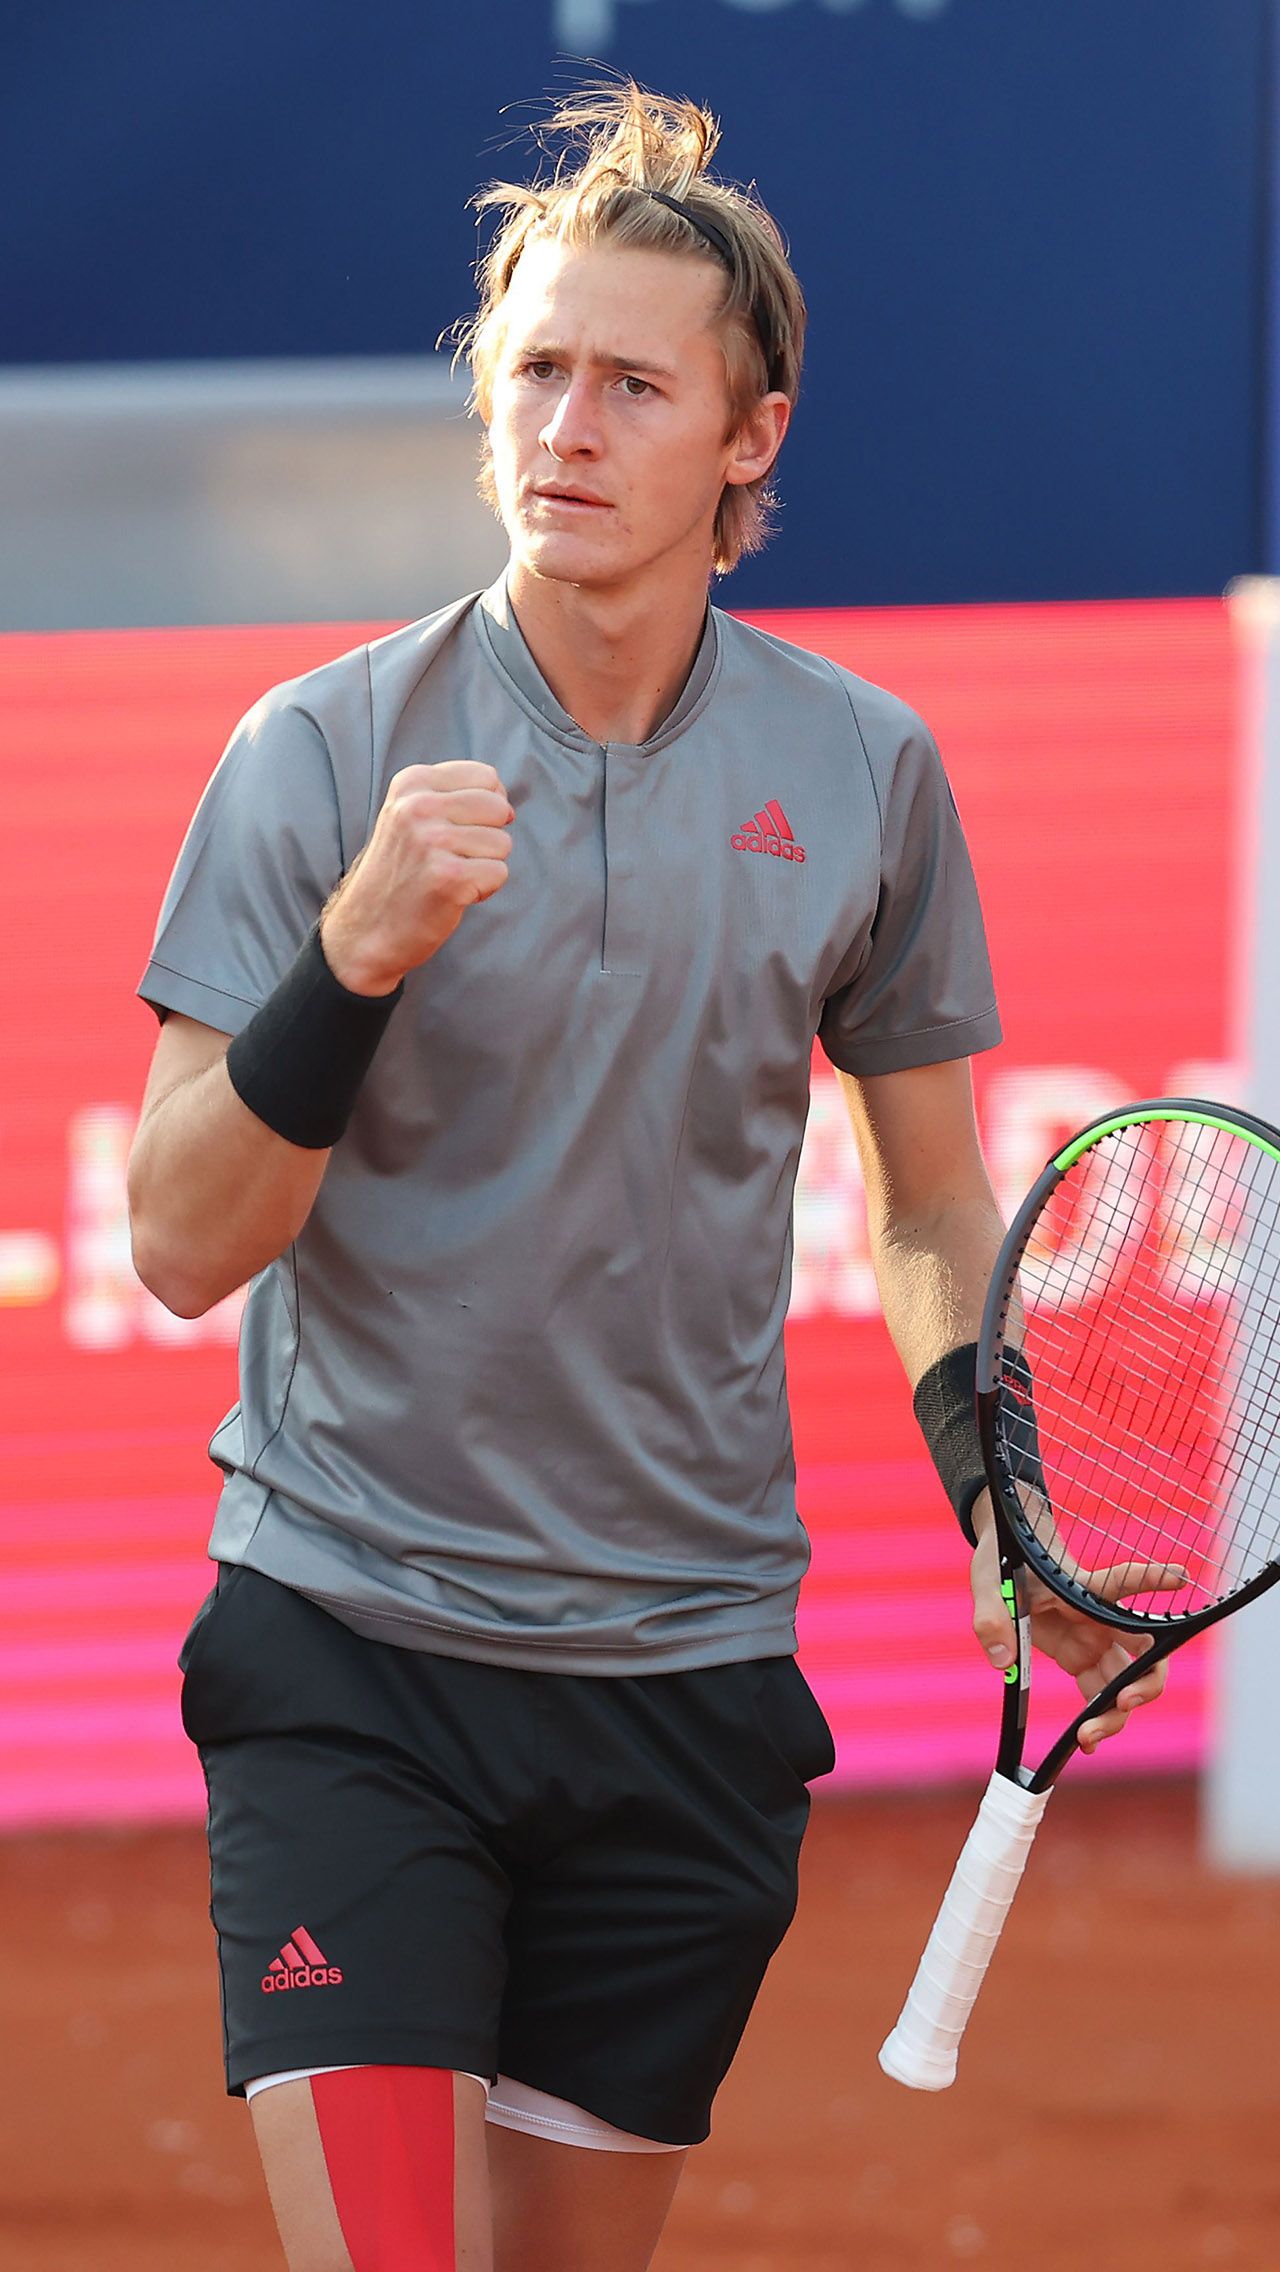 В карьере у Корды уже есть один титул ATP. В 2021 году он победил на грунте в Парме.